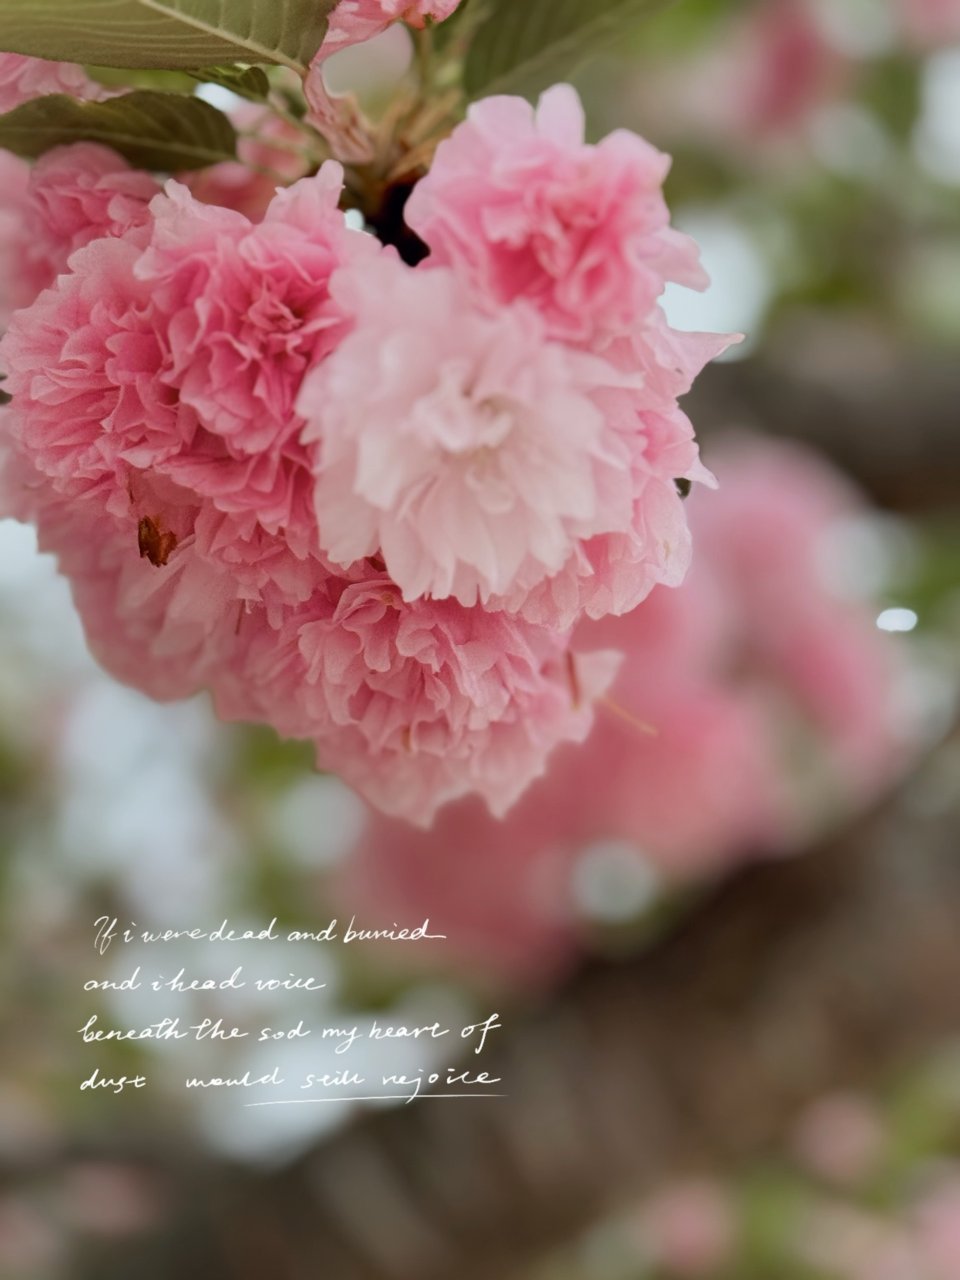 🌸樱花树 开满了花朵🌸 粉嫩粉嫩...